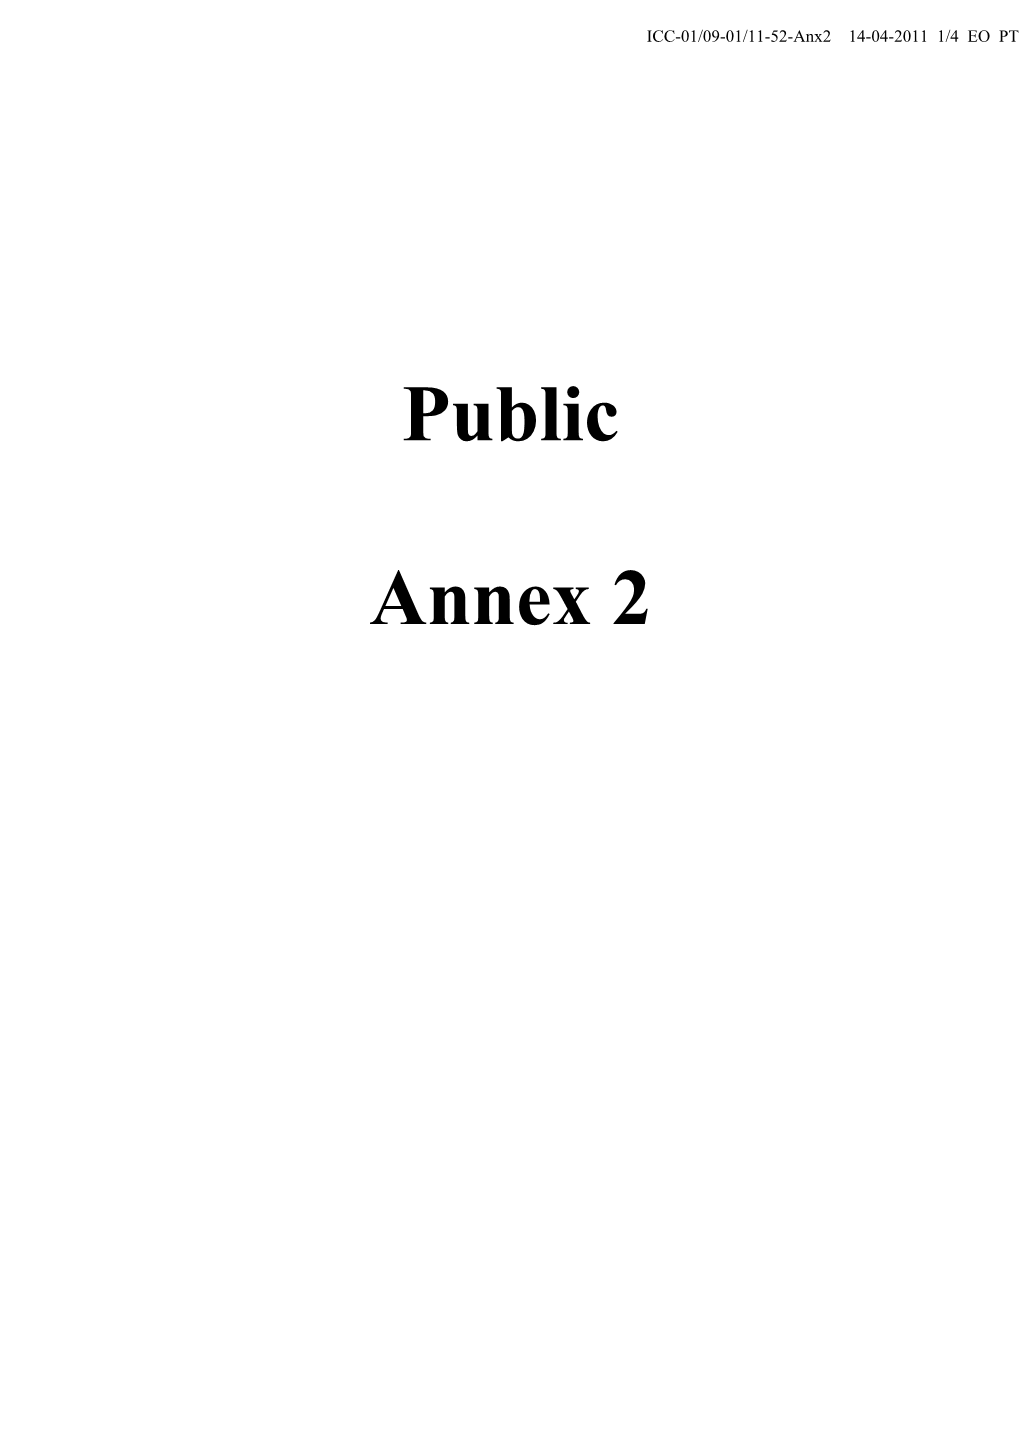 Public Annex 2